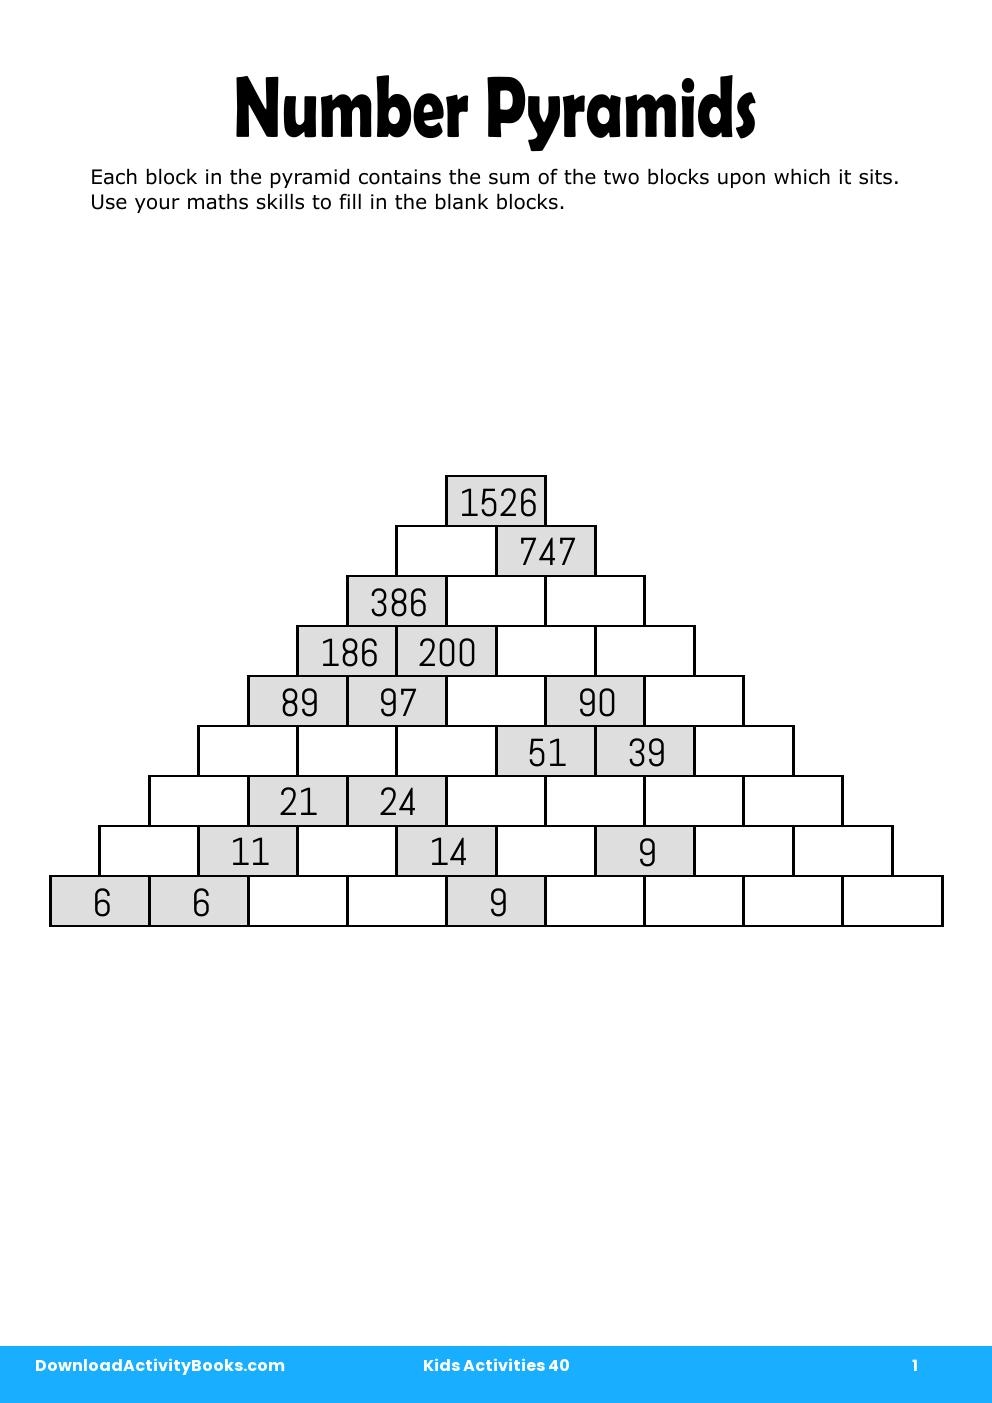 Number Pyramids in Kids Activities 40